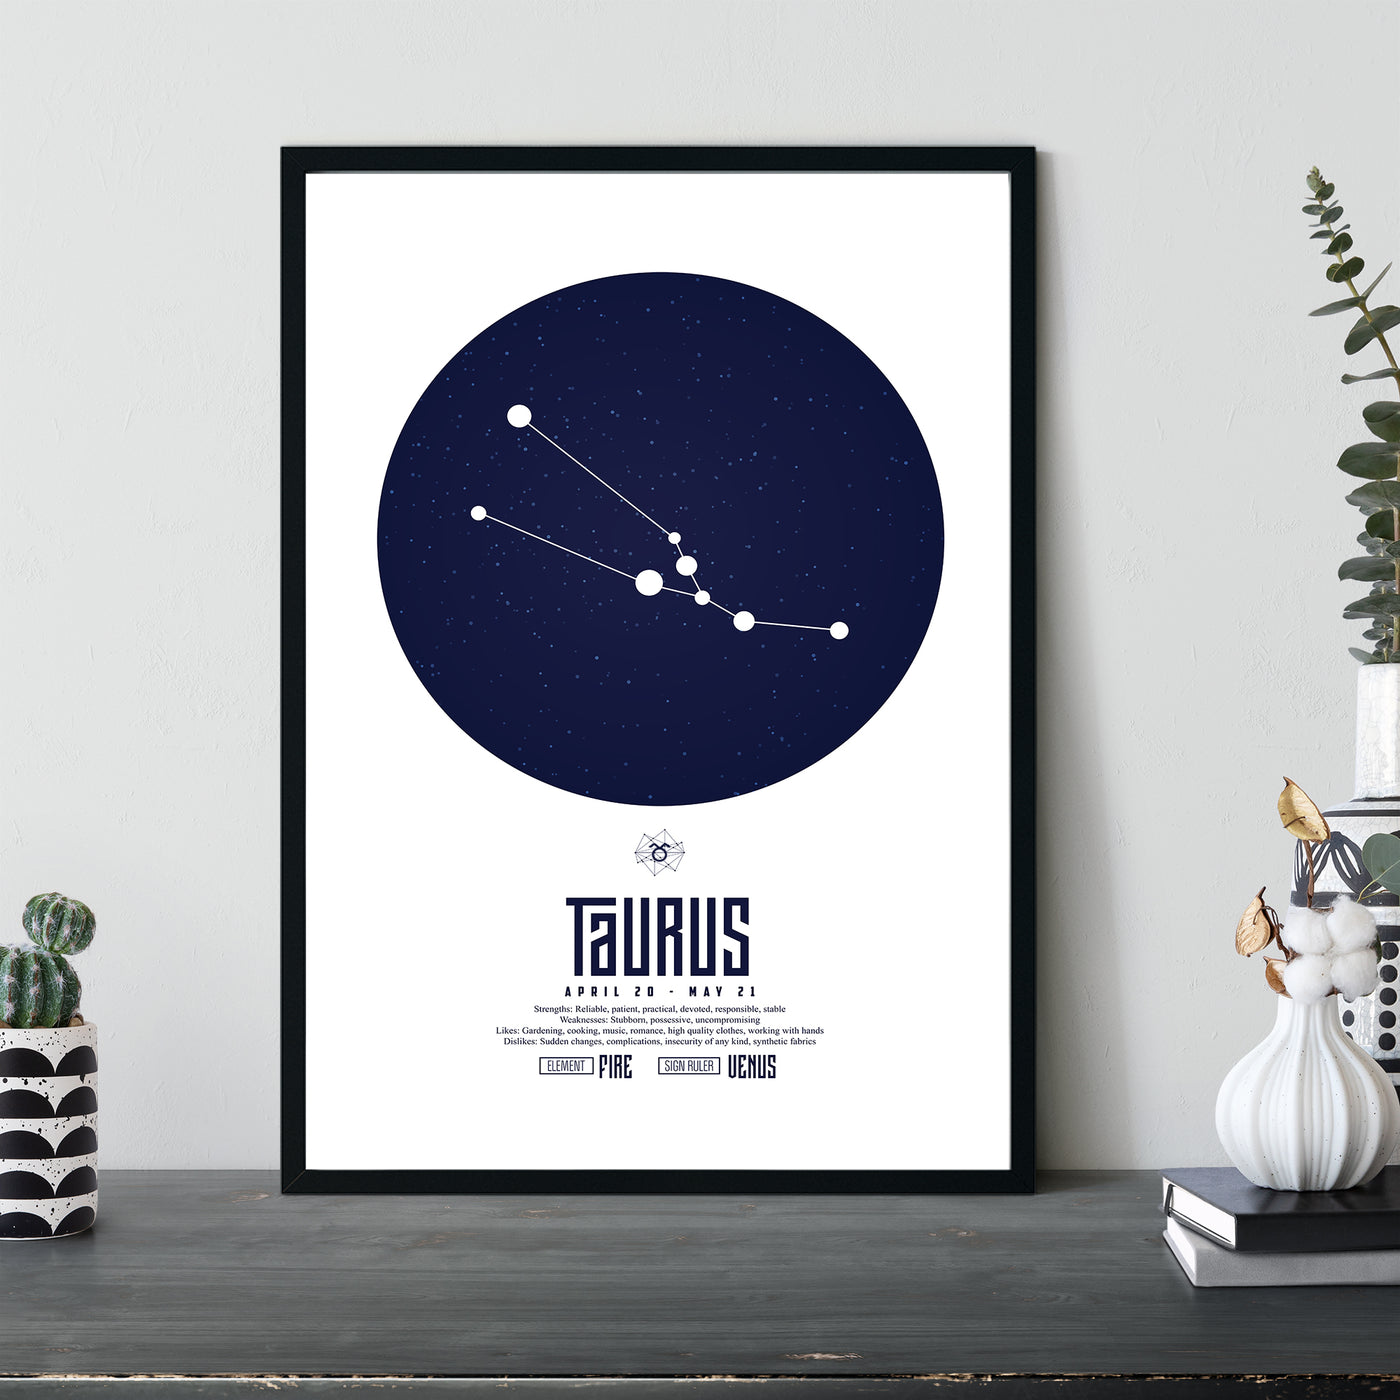 Taurus Star Sign April 20 - May 21 (Zodiac Sign)